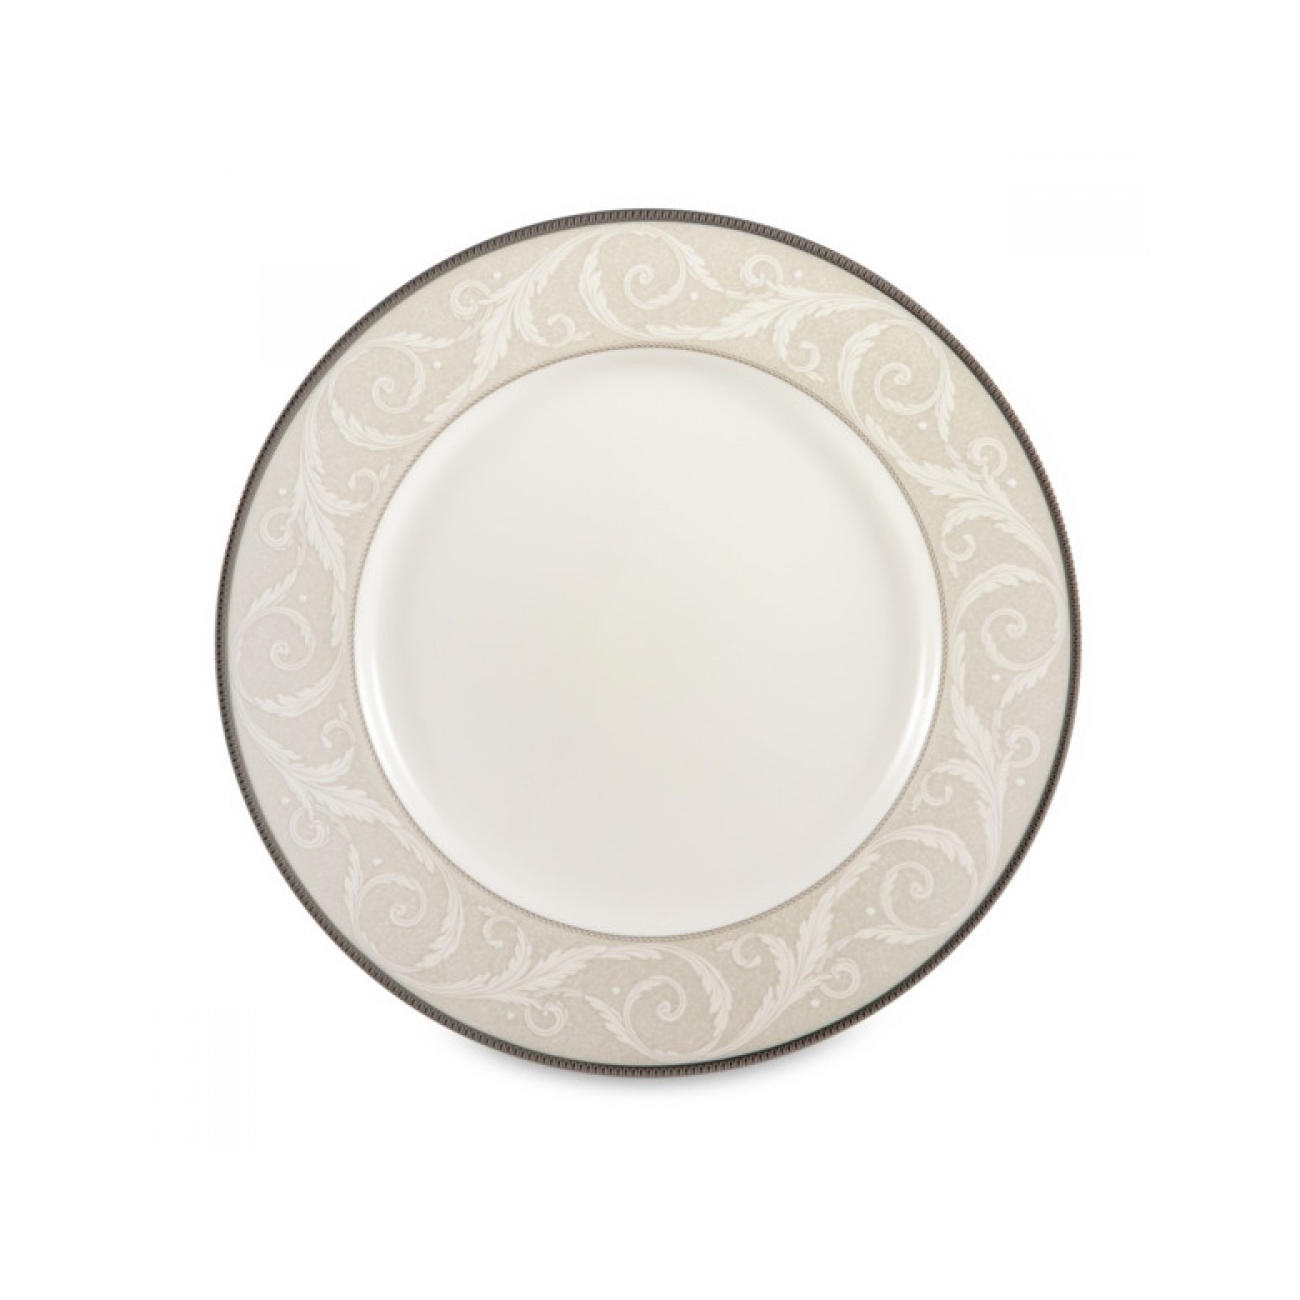 Тарелка обеденная Narumi платиновый ноктюрн 27 см тарелка пирожковая narumi платиновый ноктюрн 16 см